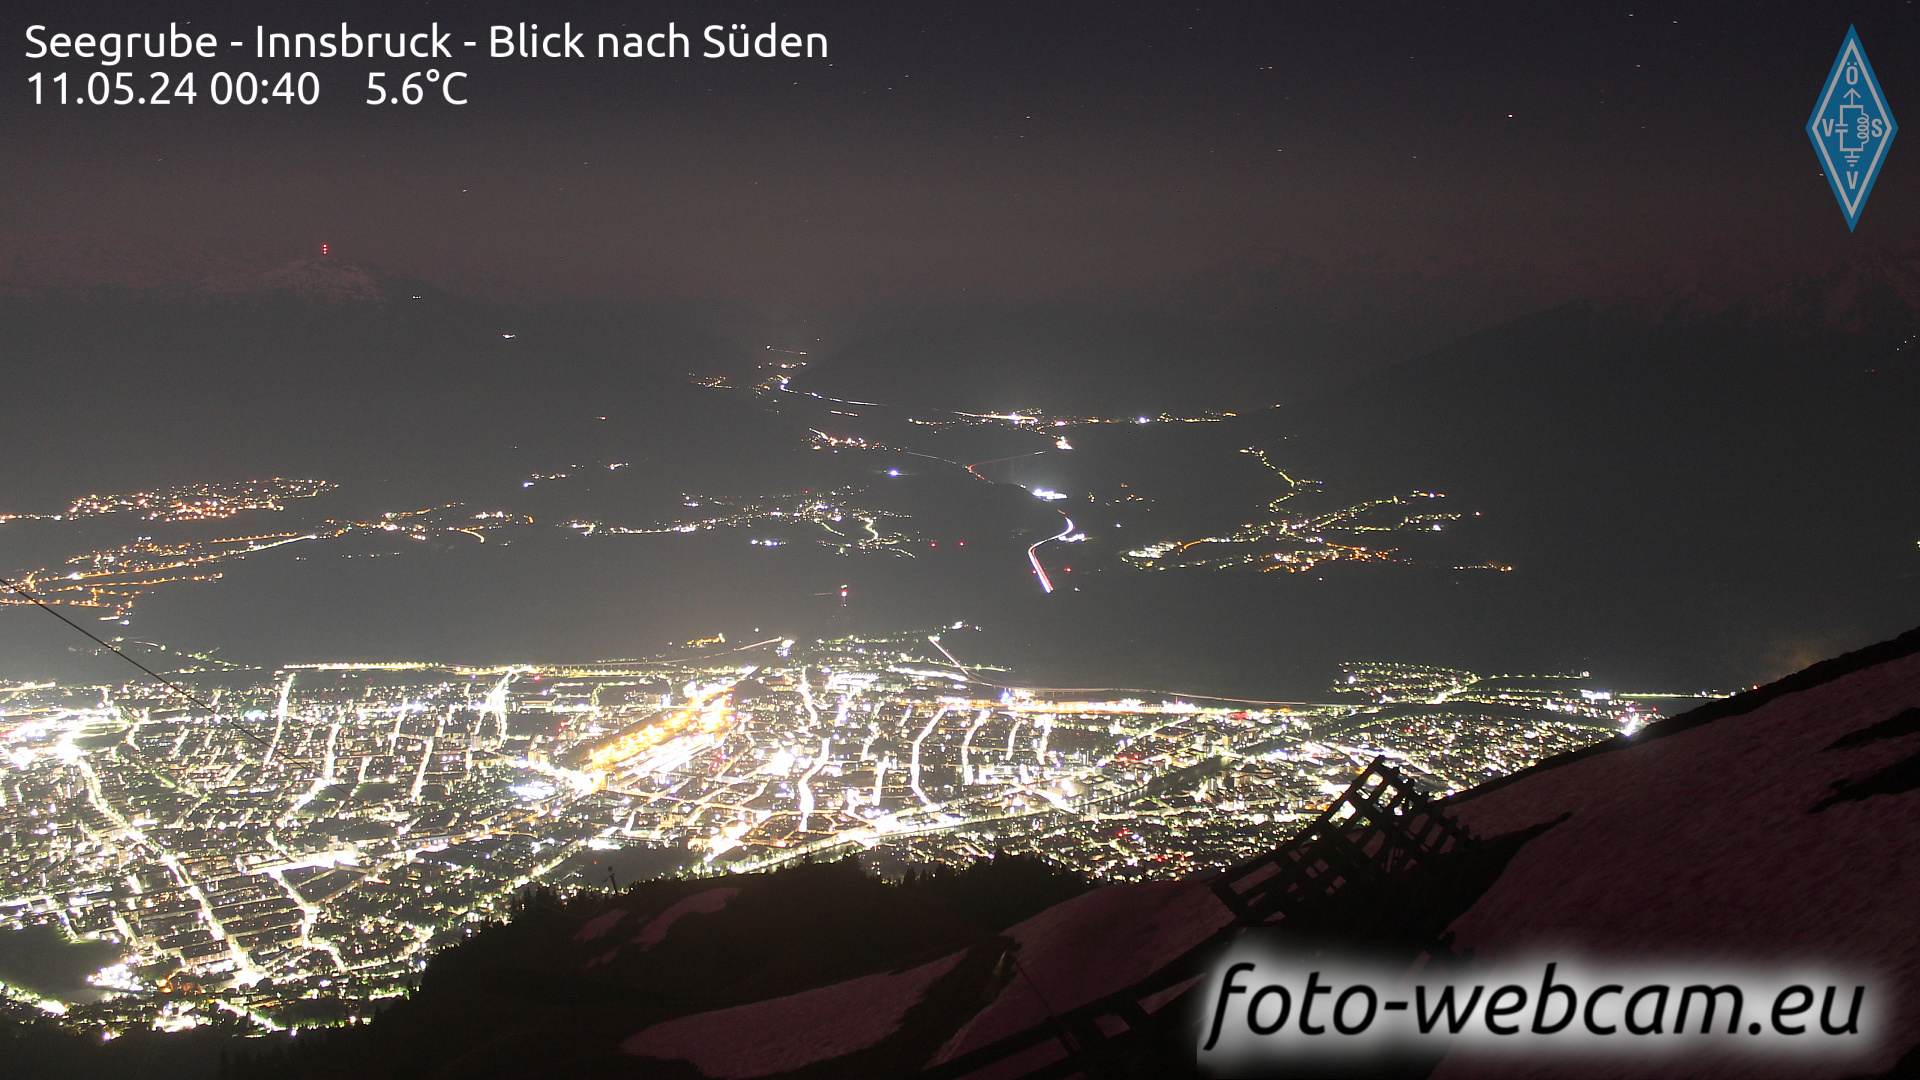 Innsbruck Sat. 00:48